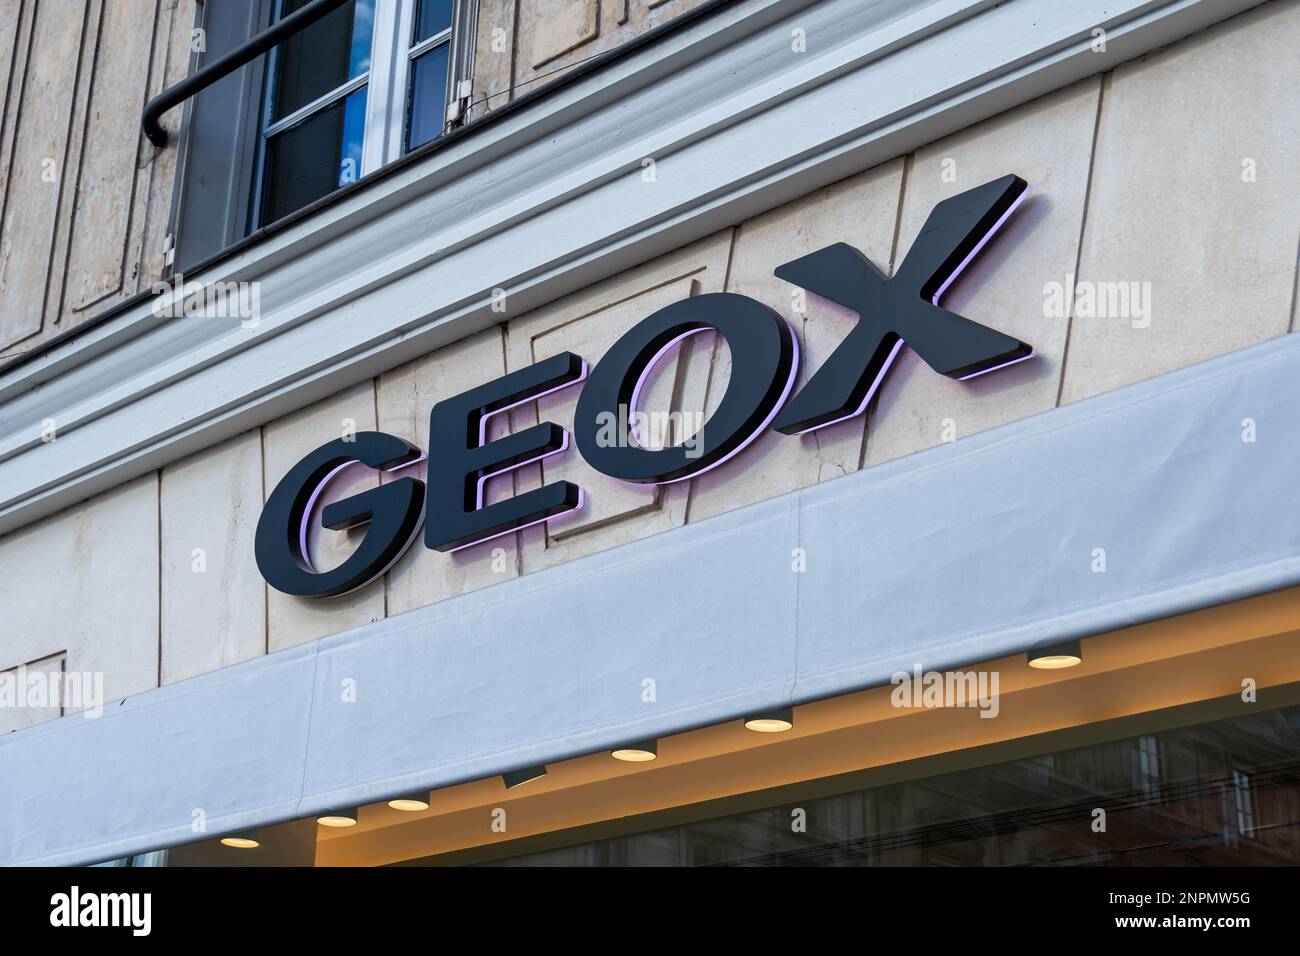 Segno commerciale di una boutique Geox. Geox è un'azienda italiana che progetta e vende scarpe da respirazione, moda e accessori Foto Stock